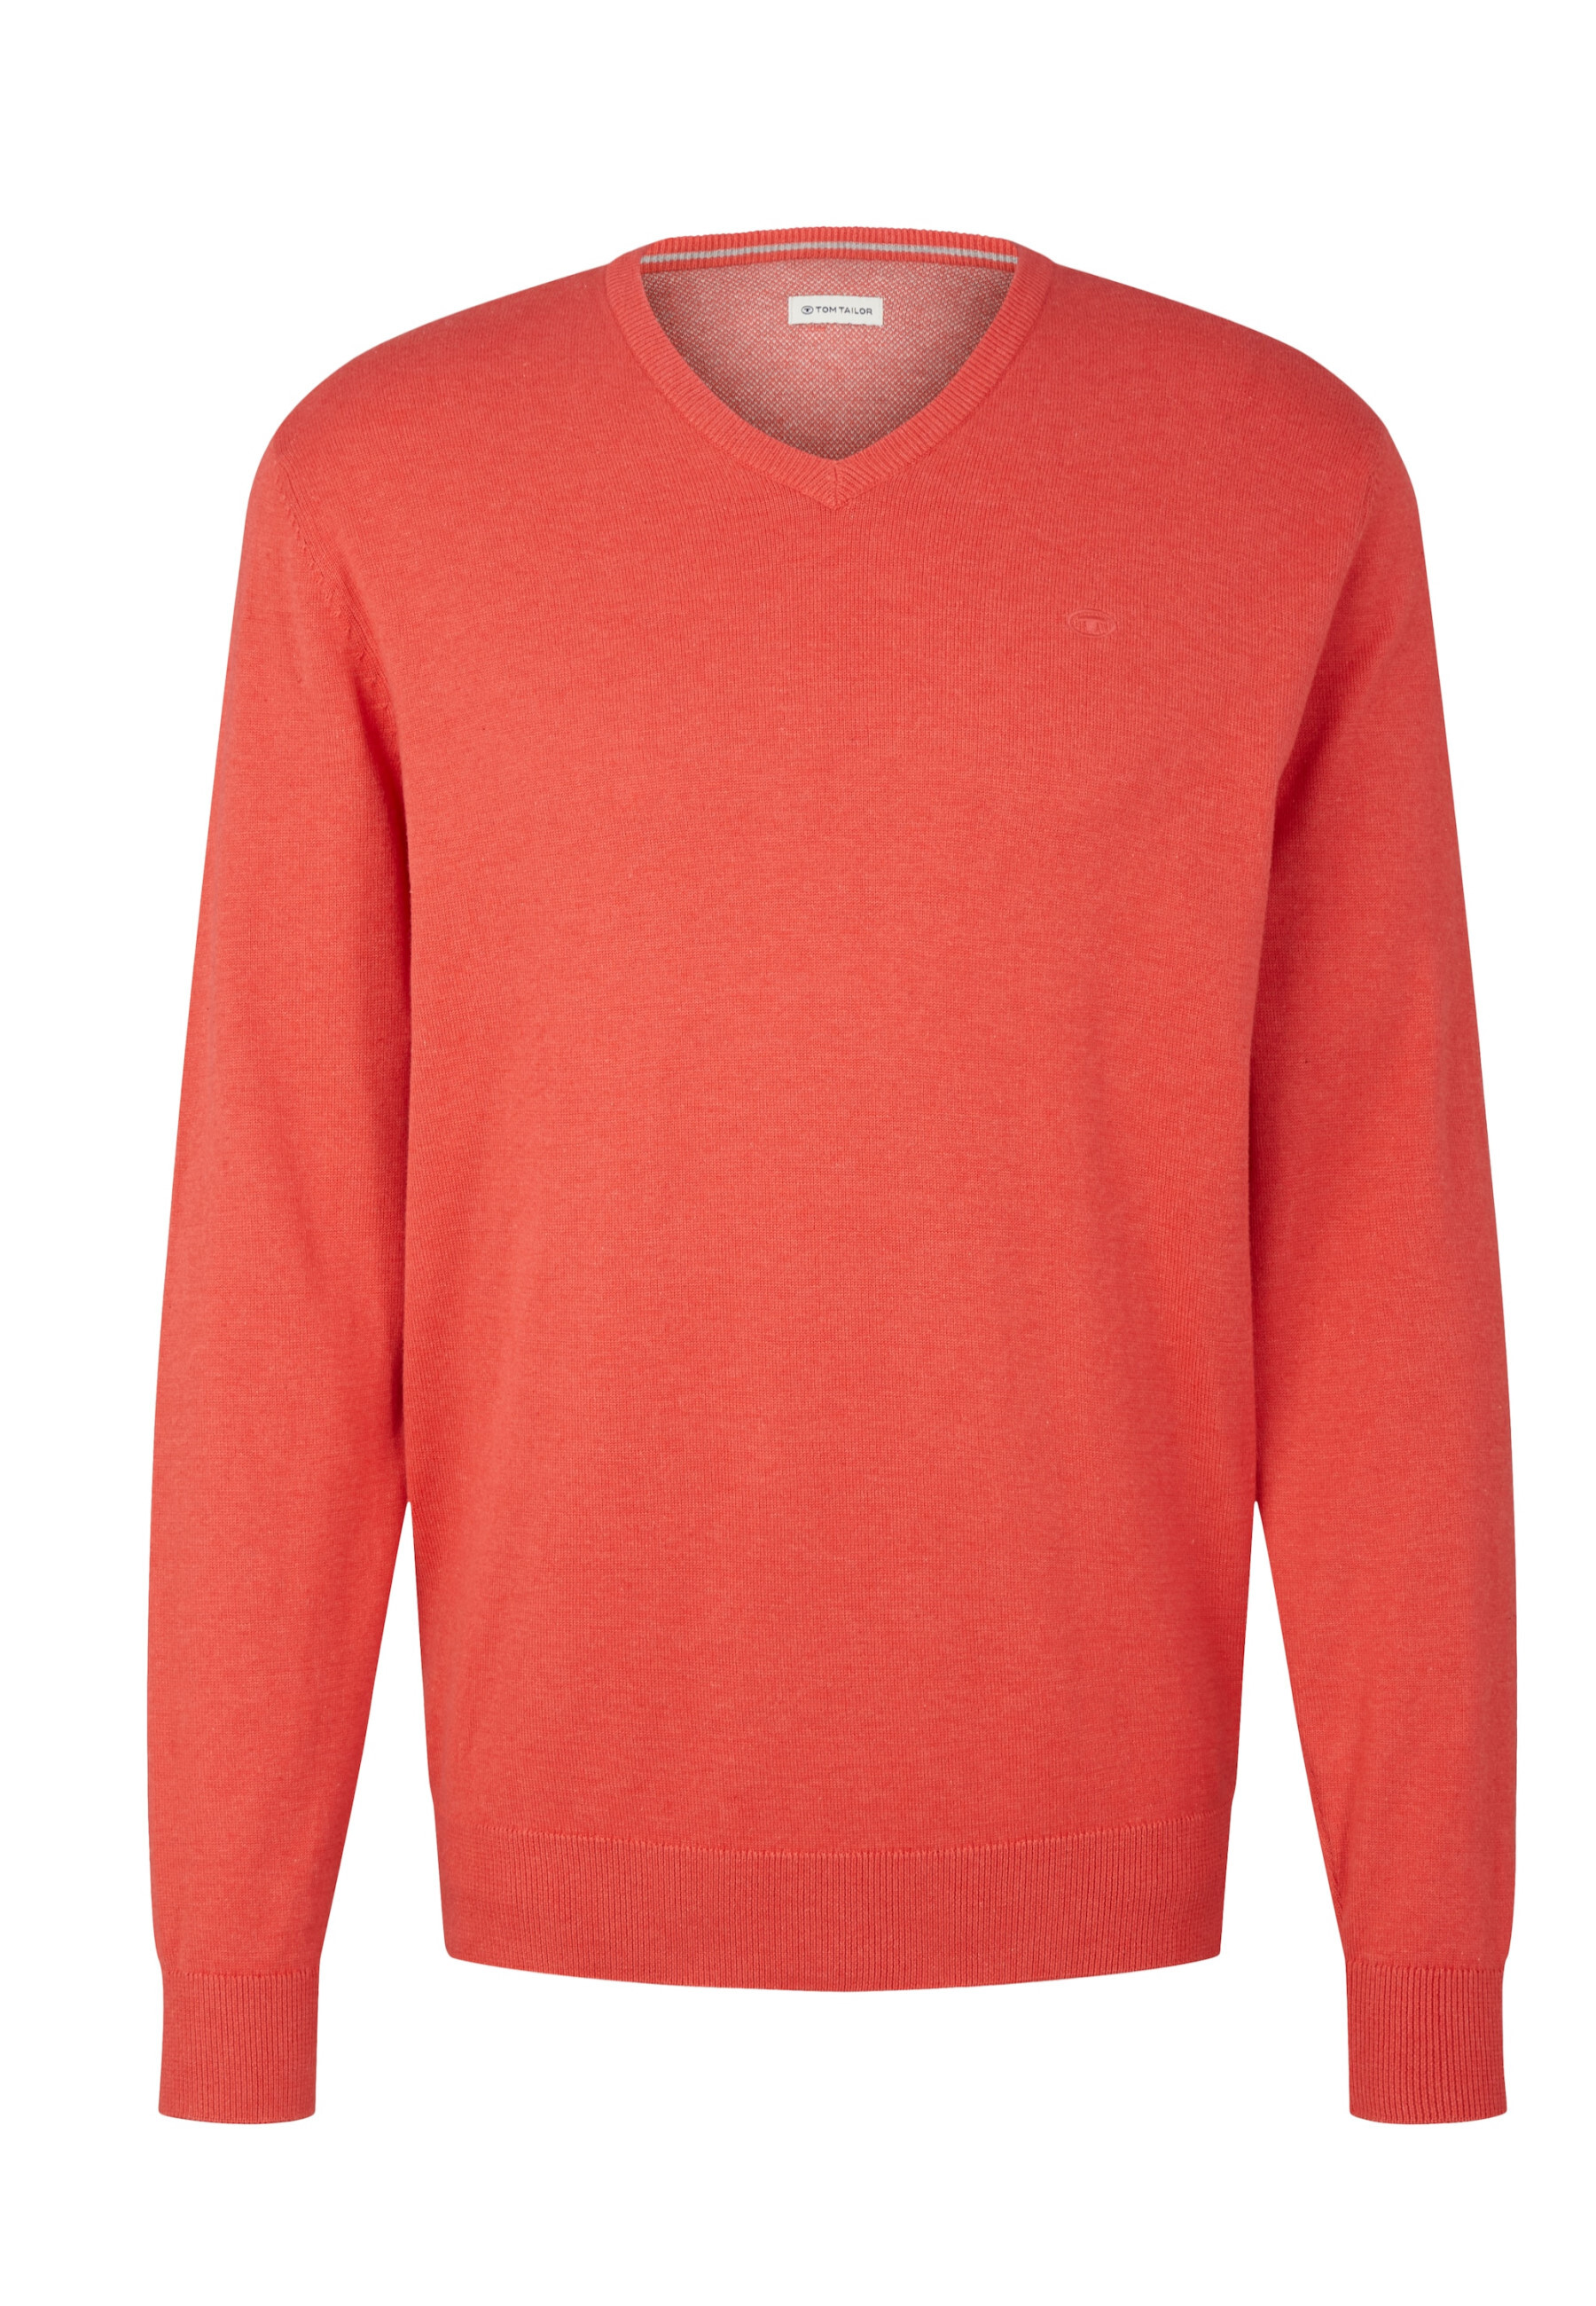 Пуловер Tom Tailor, красный пуловер tom tailor strick красный